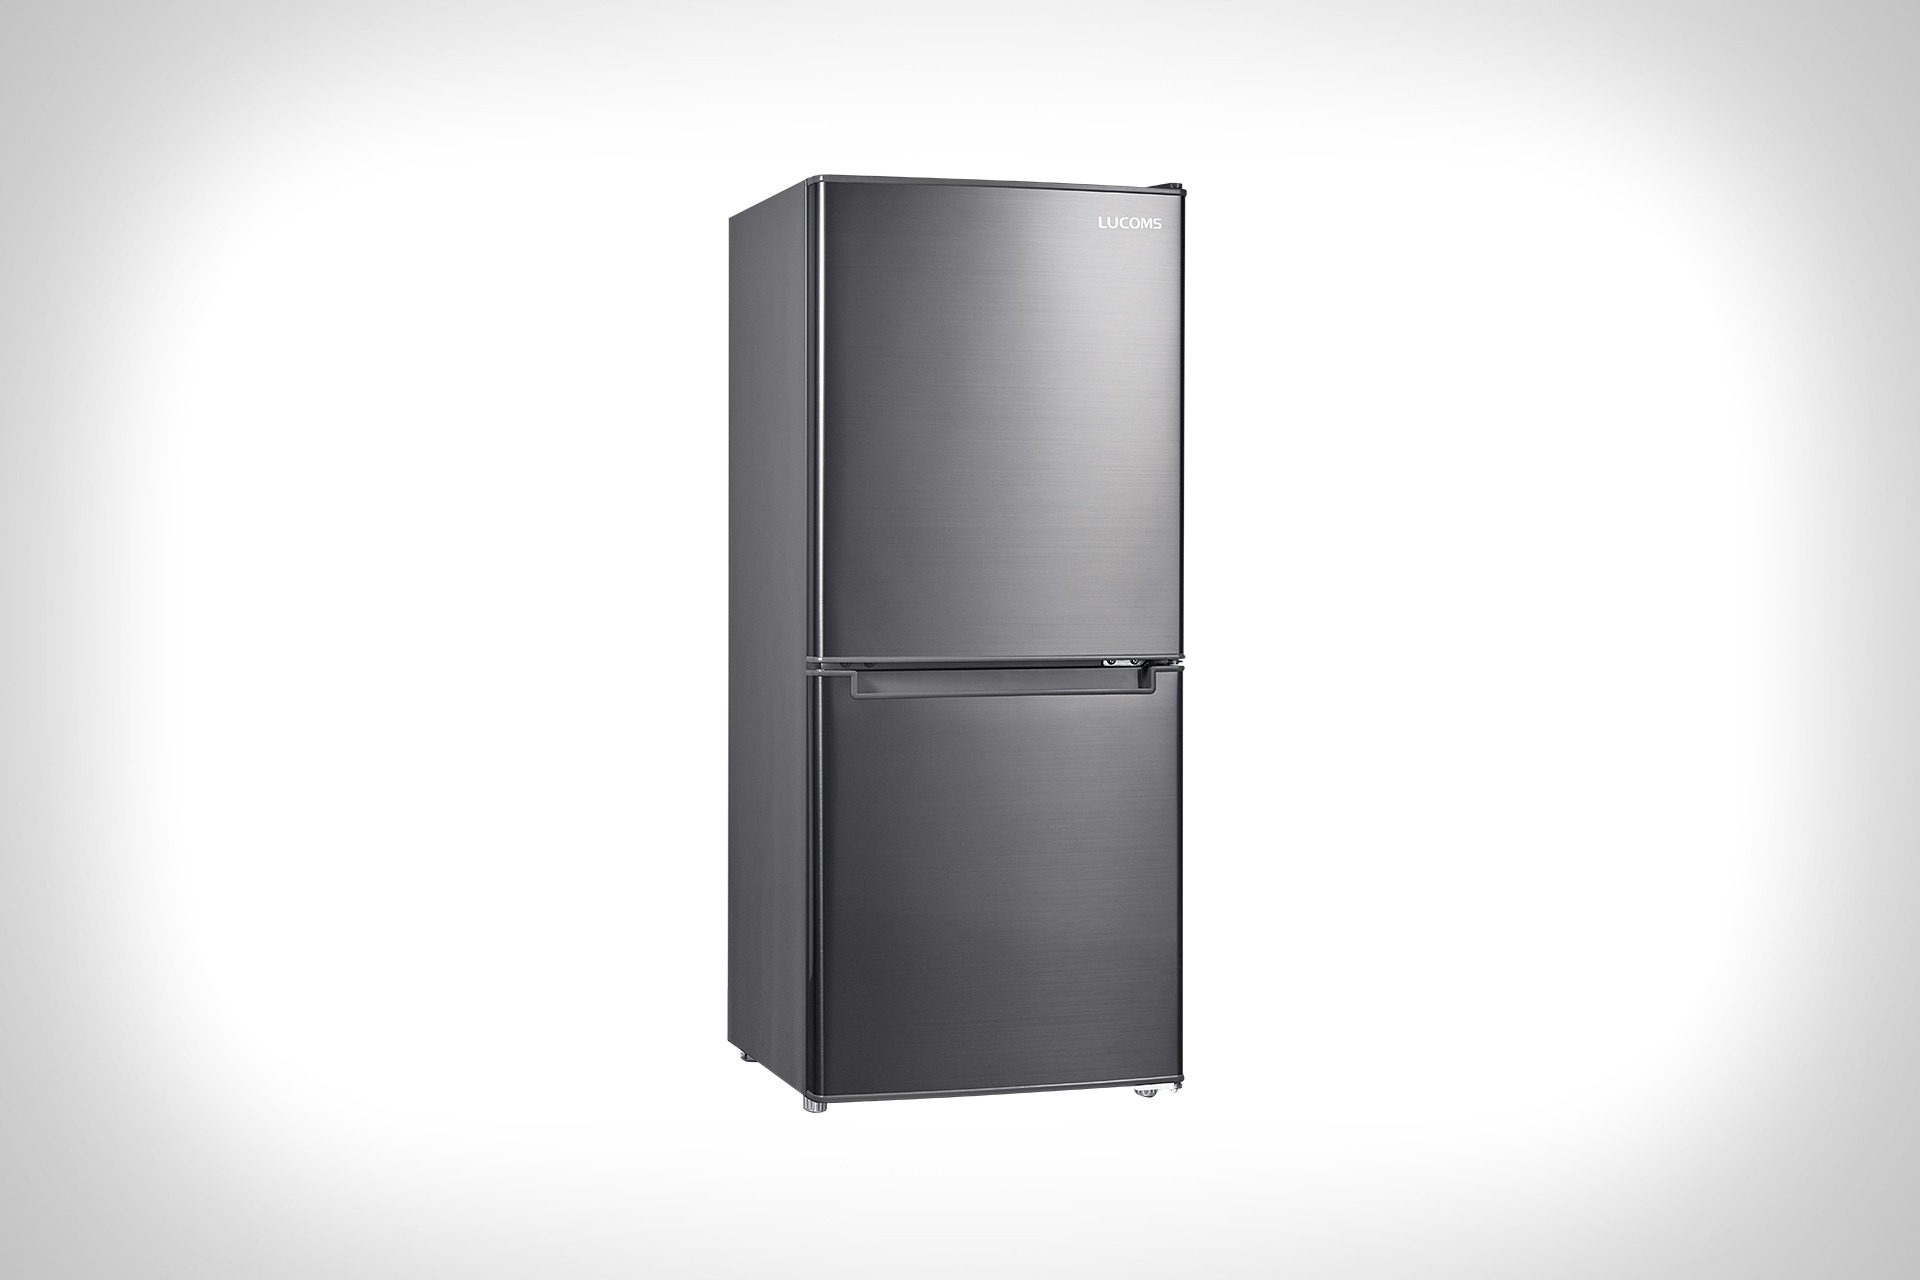 106L 슬림형 냉장고 R10H01-S